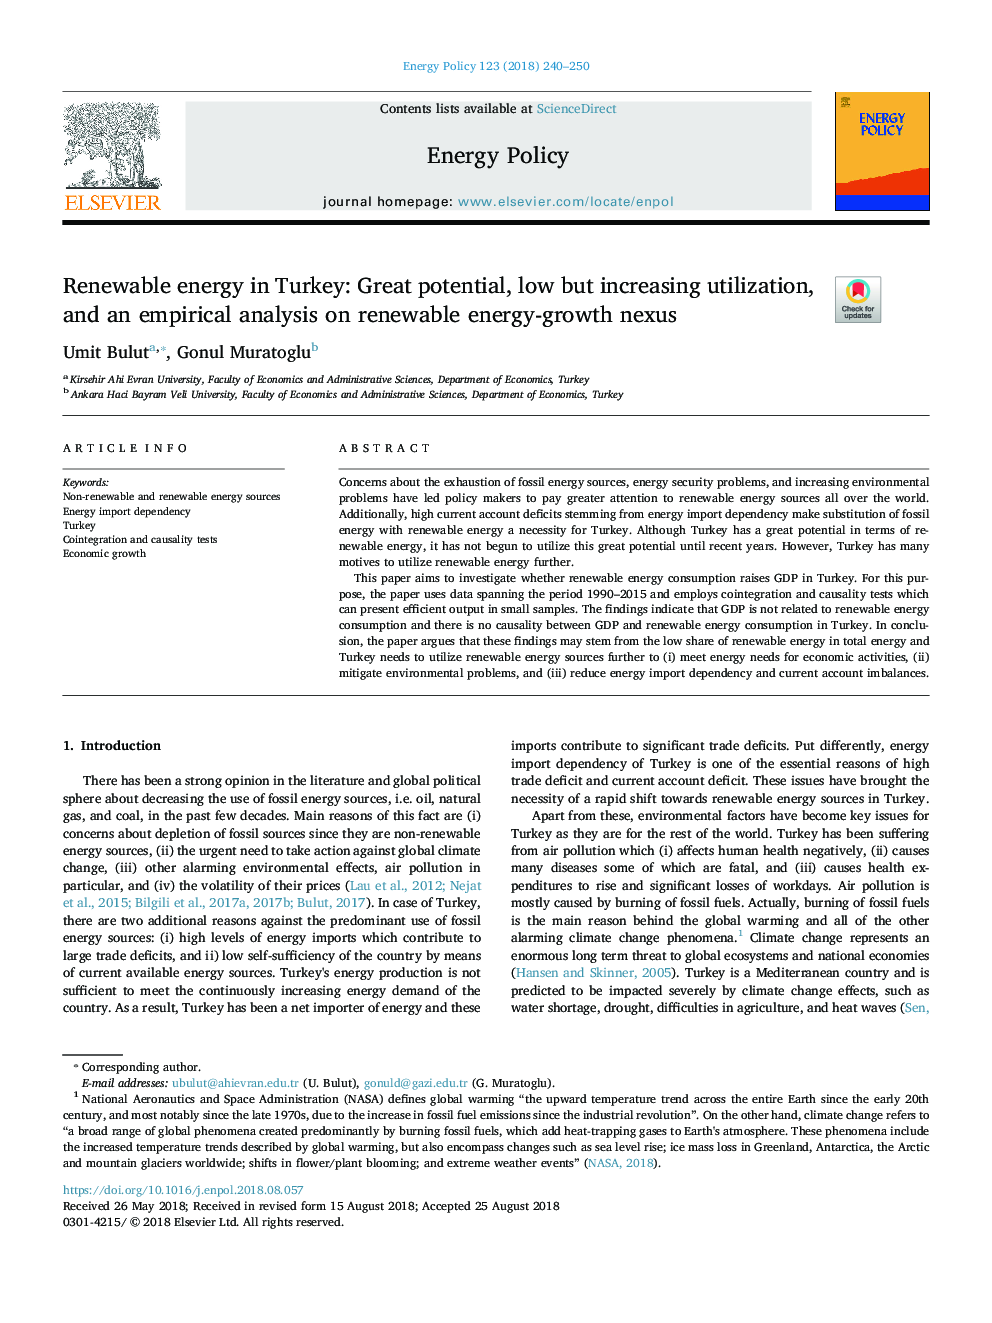 انرژی های تجدید پذیر در ترکیه: پتانسیل بزرگ، استفاده کم و اما در حال افزایش، و یک تحلیل تجربی در ارتباطات انرژی تجدید پذیر